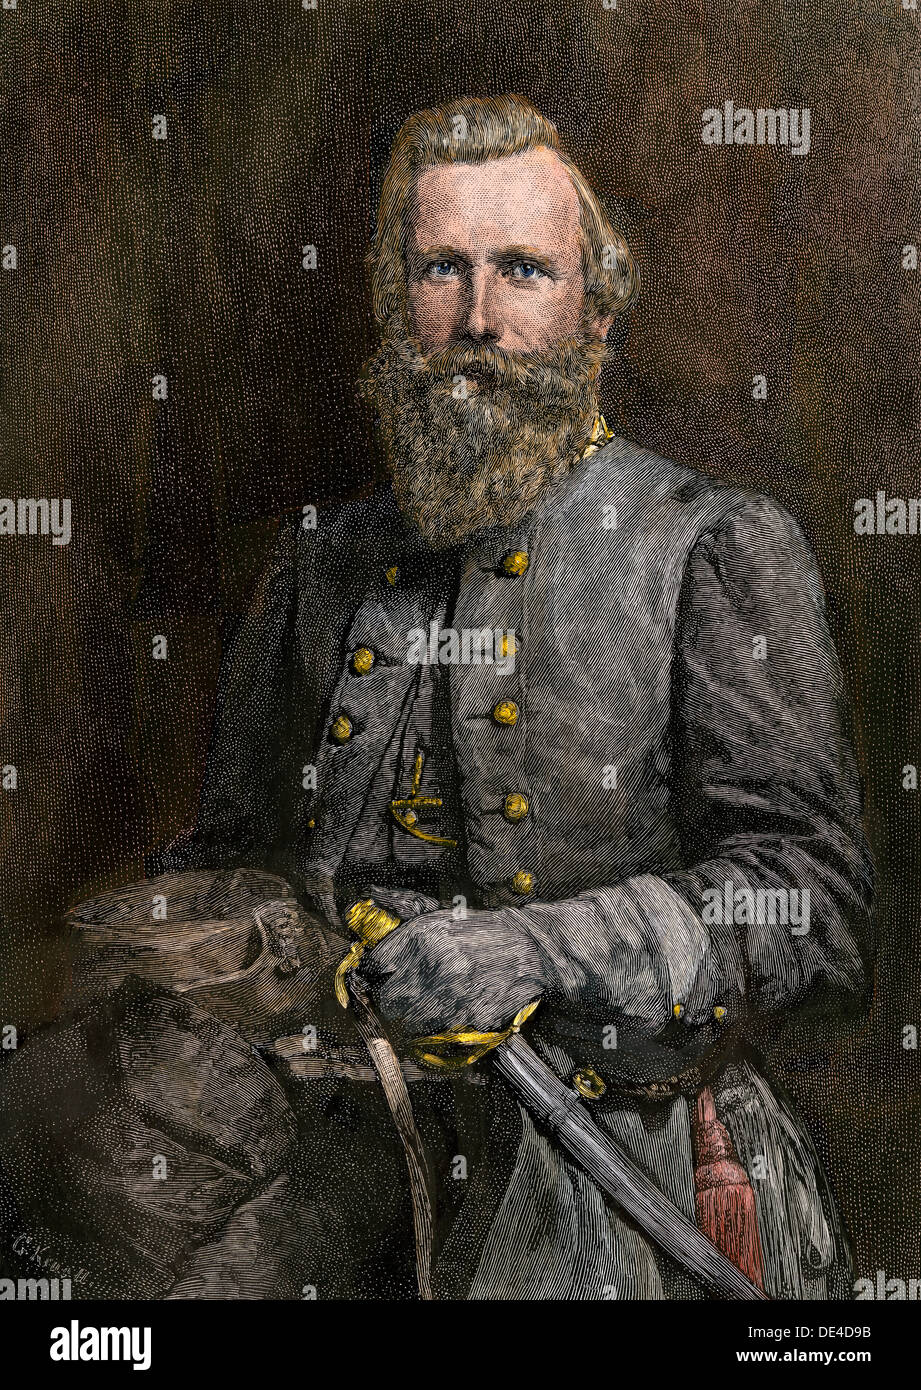 Général J.E.B. Stuart, commandant de la cavalerie confédérée. À la main, gravure sur bois Banque D'Images